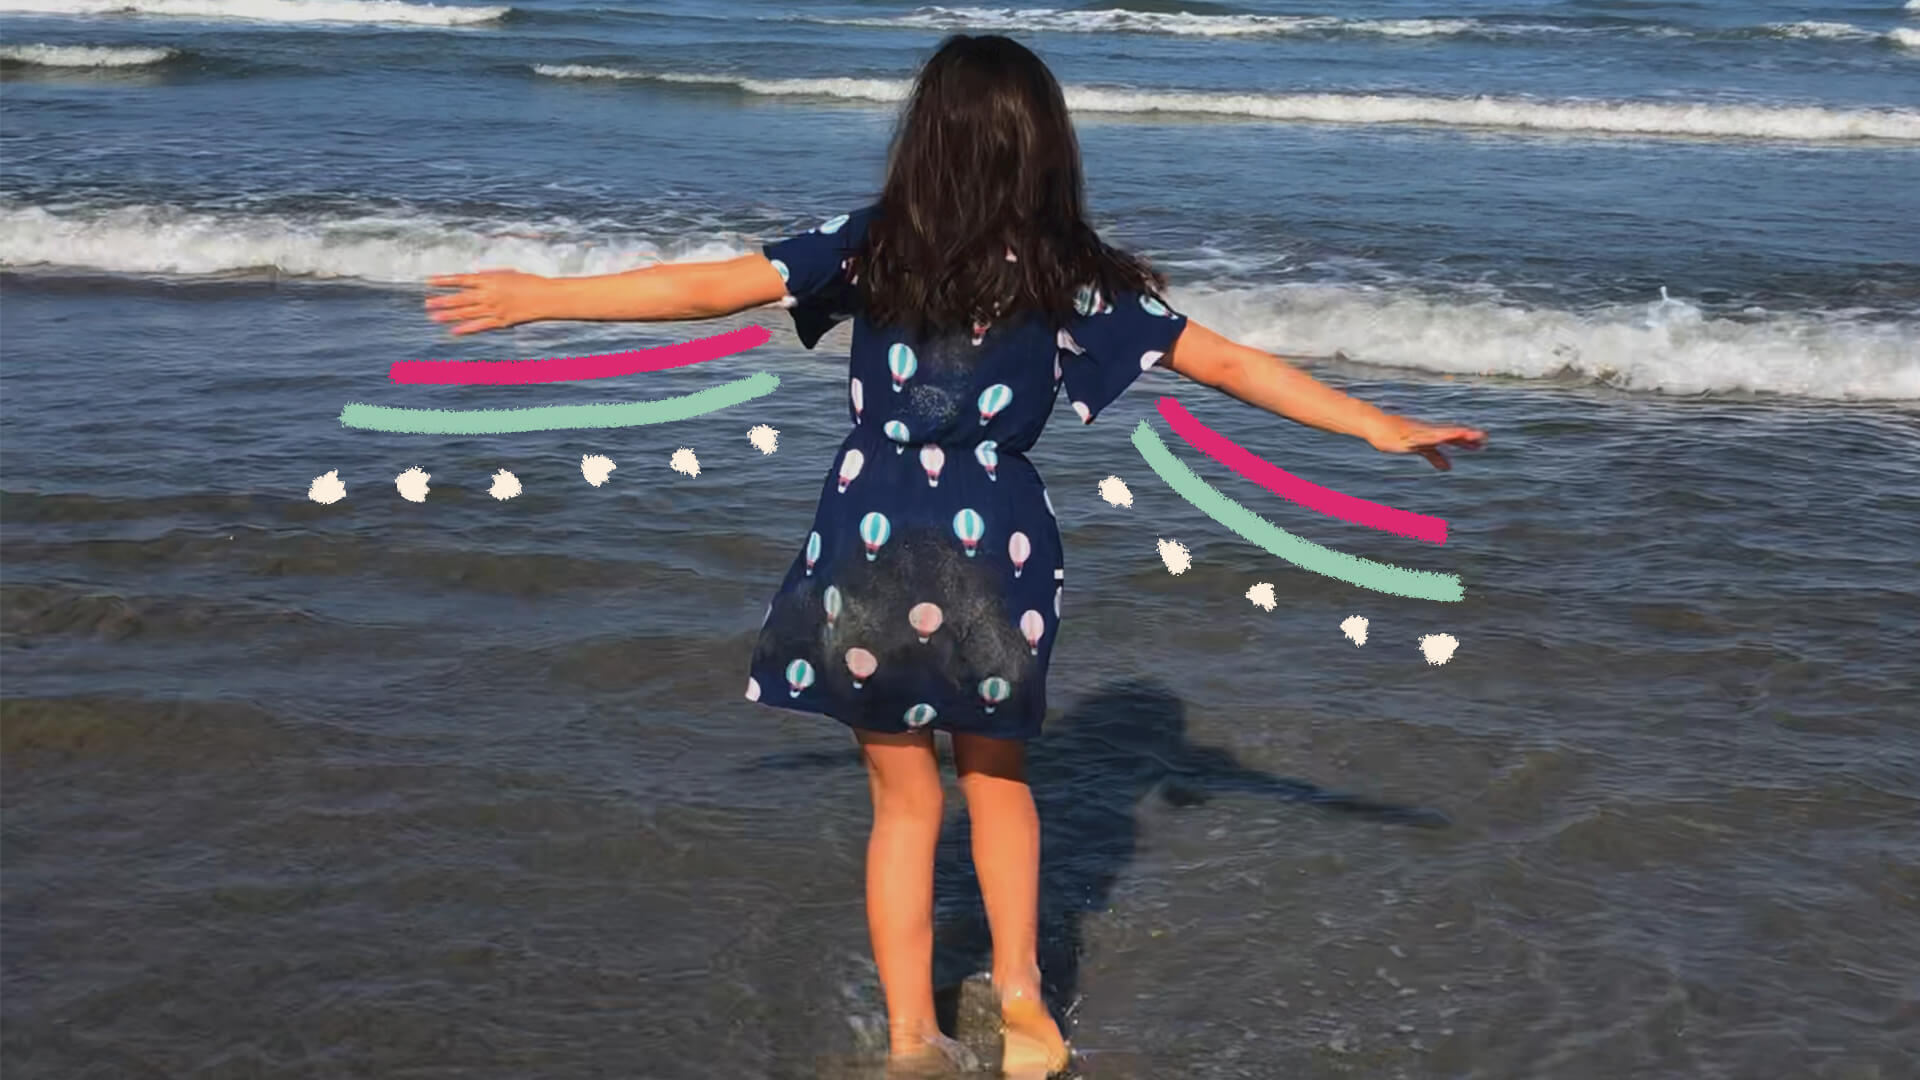 Na foto, uma menina com vestido azul olha para o mar com os braços abertos. A imagem possui intervenções coloridas.